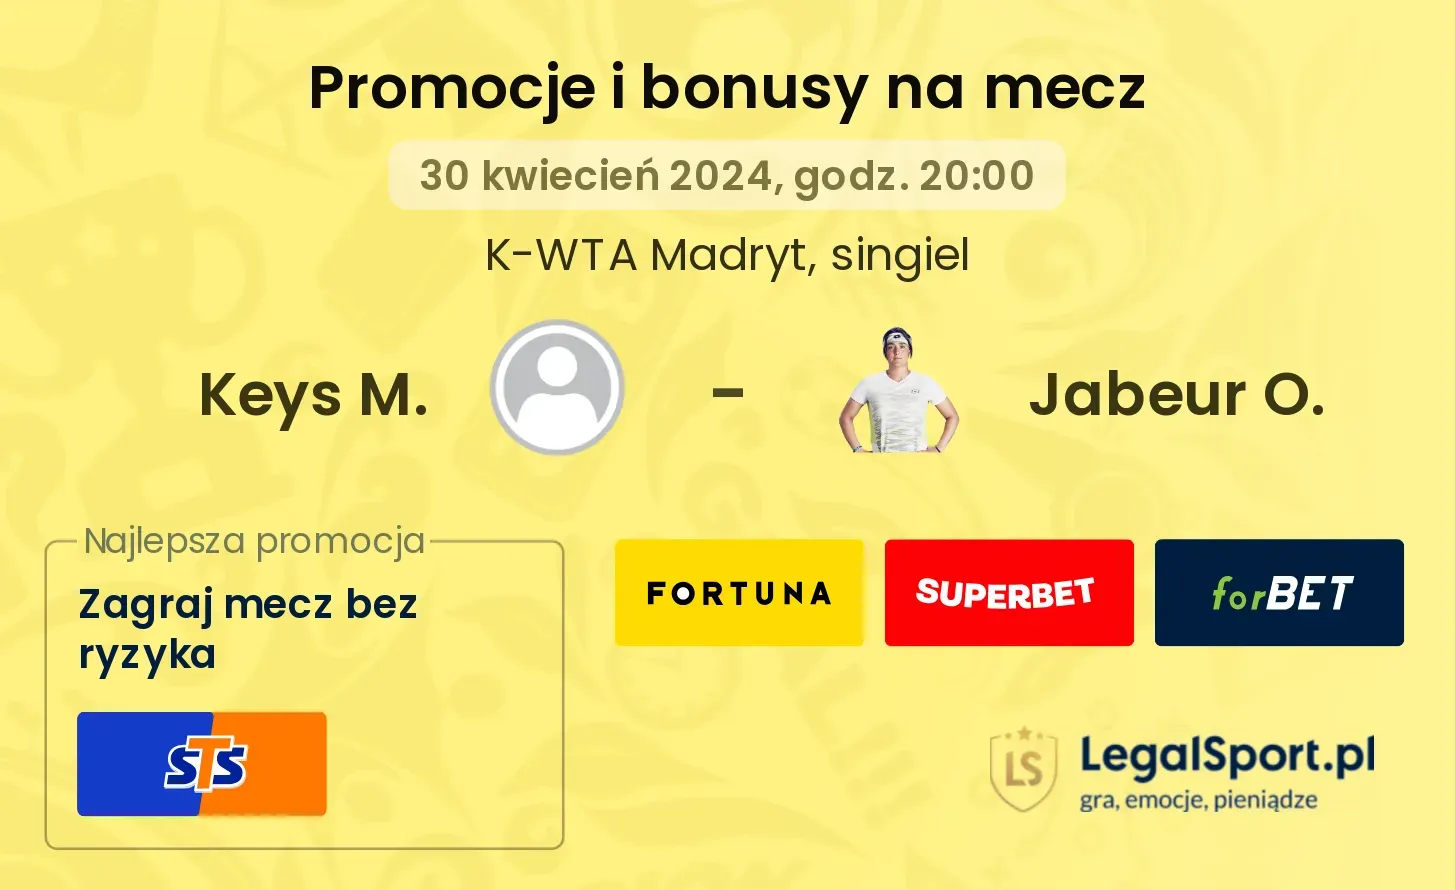 Keys M. - Jabeur O. promocje bonusy na mecz